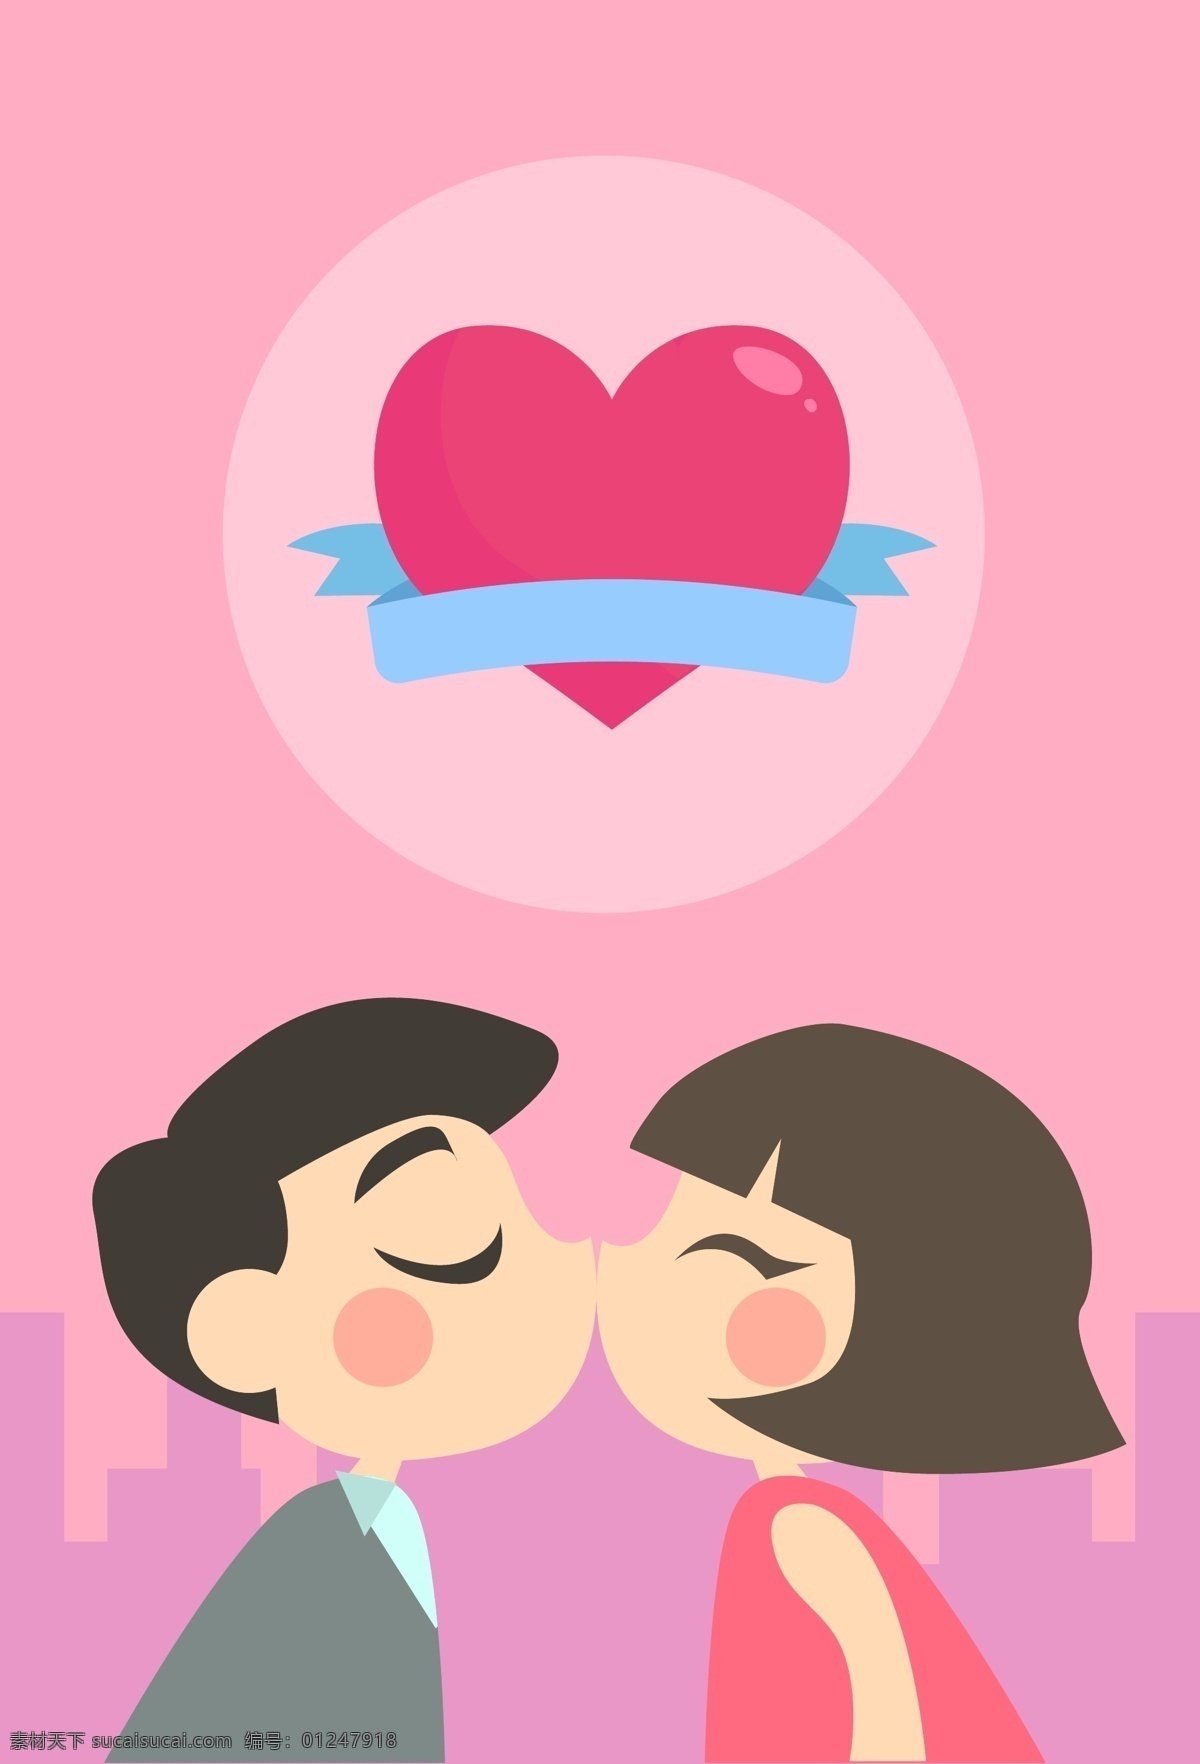 国际 接吻 日 海报 背景 接吻日 国际节日 kiss 国际亲吻节 7月6日 亲吻节 浪漫 爱 情侣 爱心